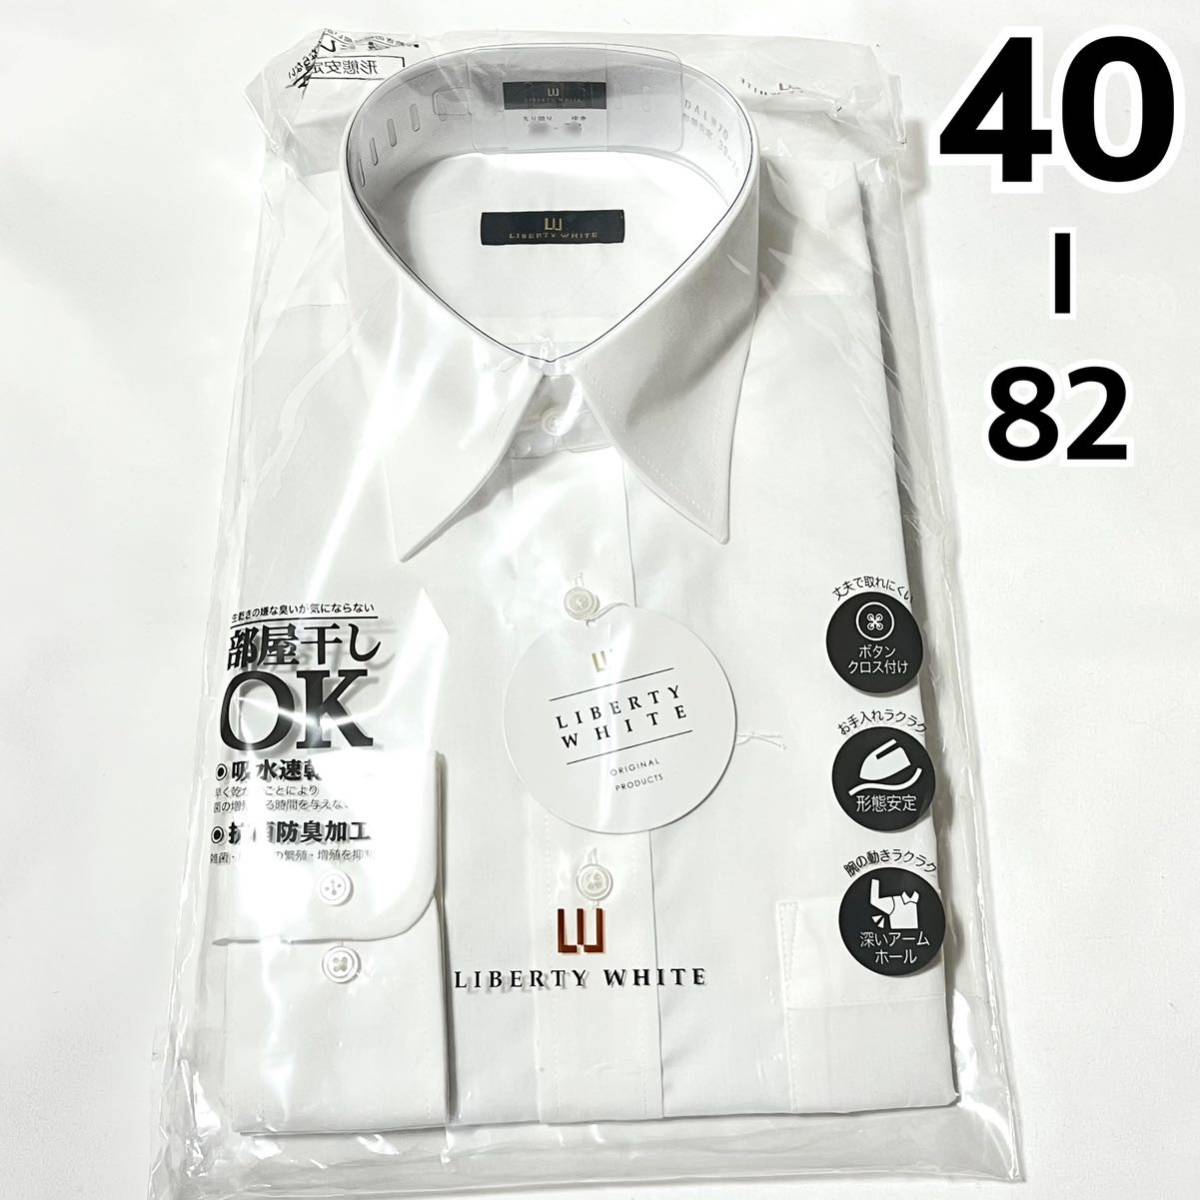 【新品】メンズ 長袖 ワイシャツ【503】形態安定 抗菌防臭 吸水速乾 Yシャツ ホワイト 白 40 82_画像1